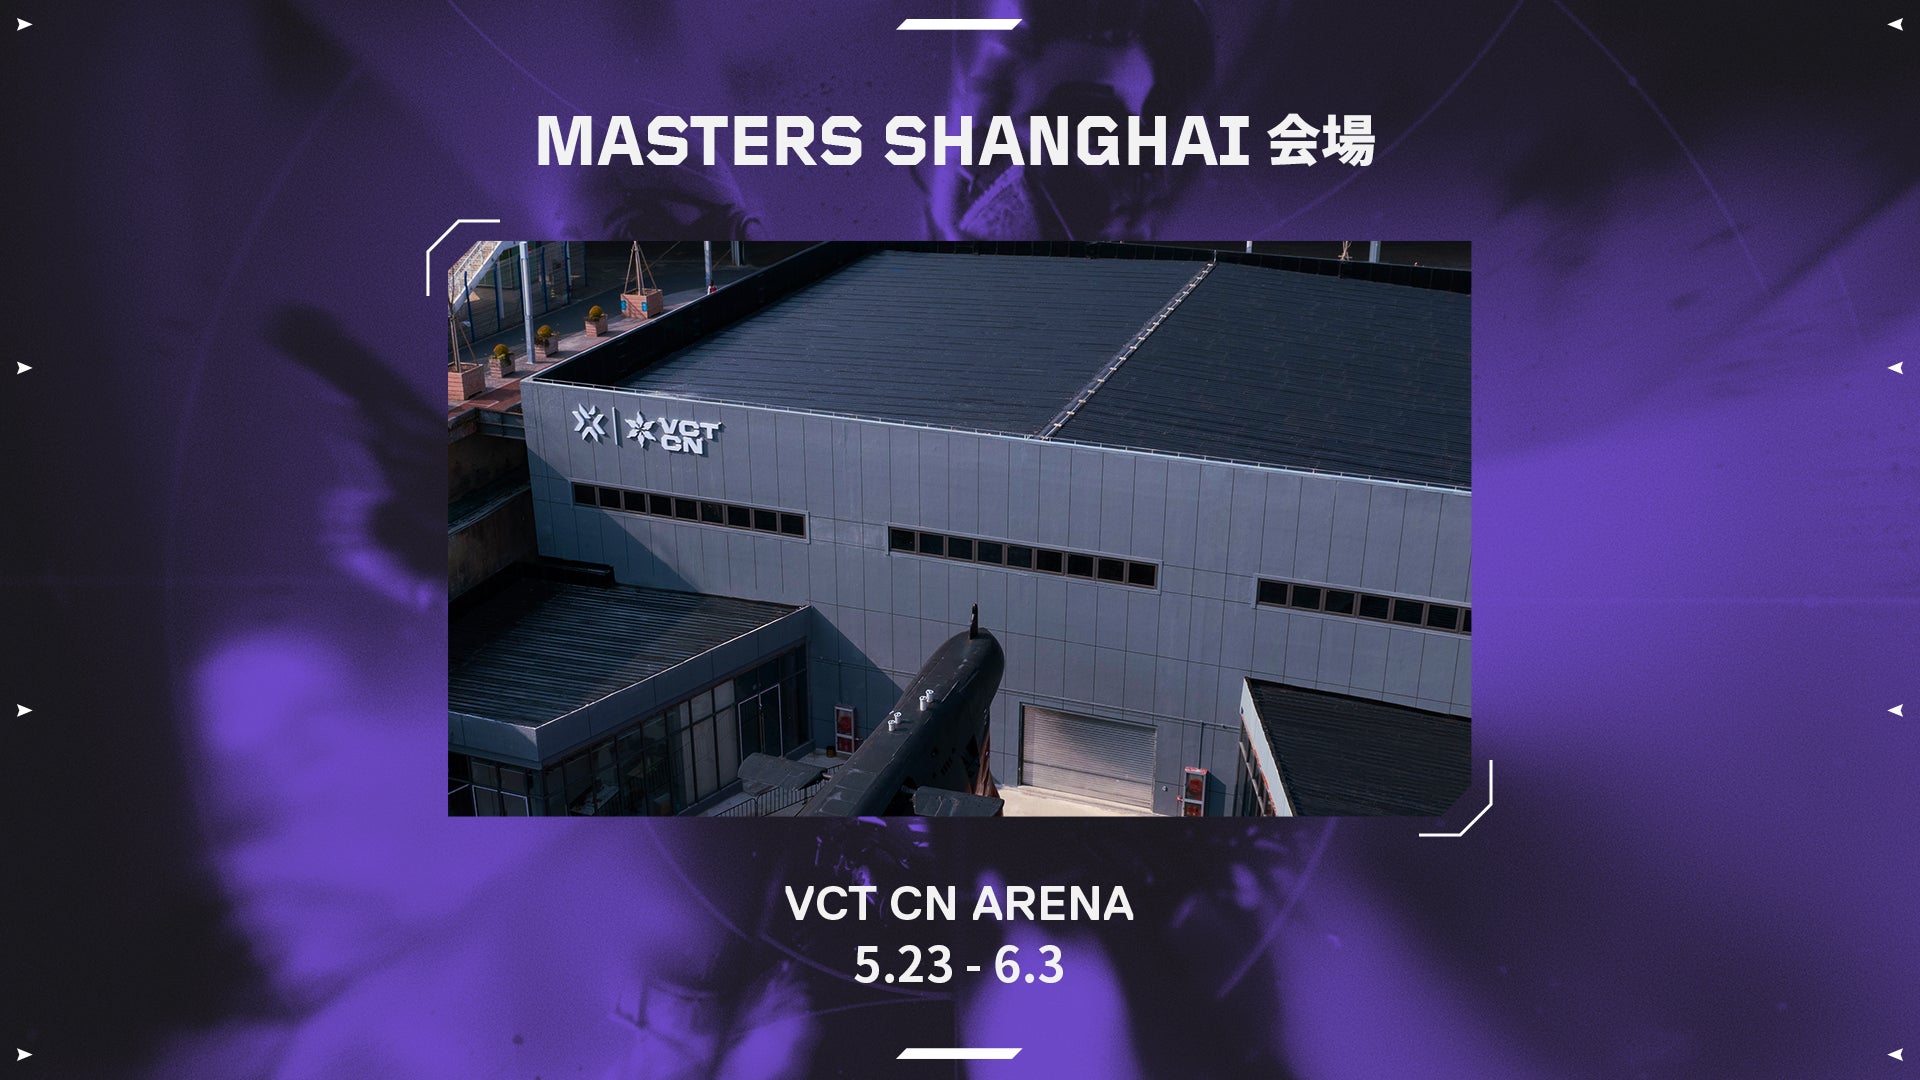 ライアットゲームズ、VALORANTの国際大会「Masters Shanghai」開催会場およびチケット情報を発表